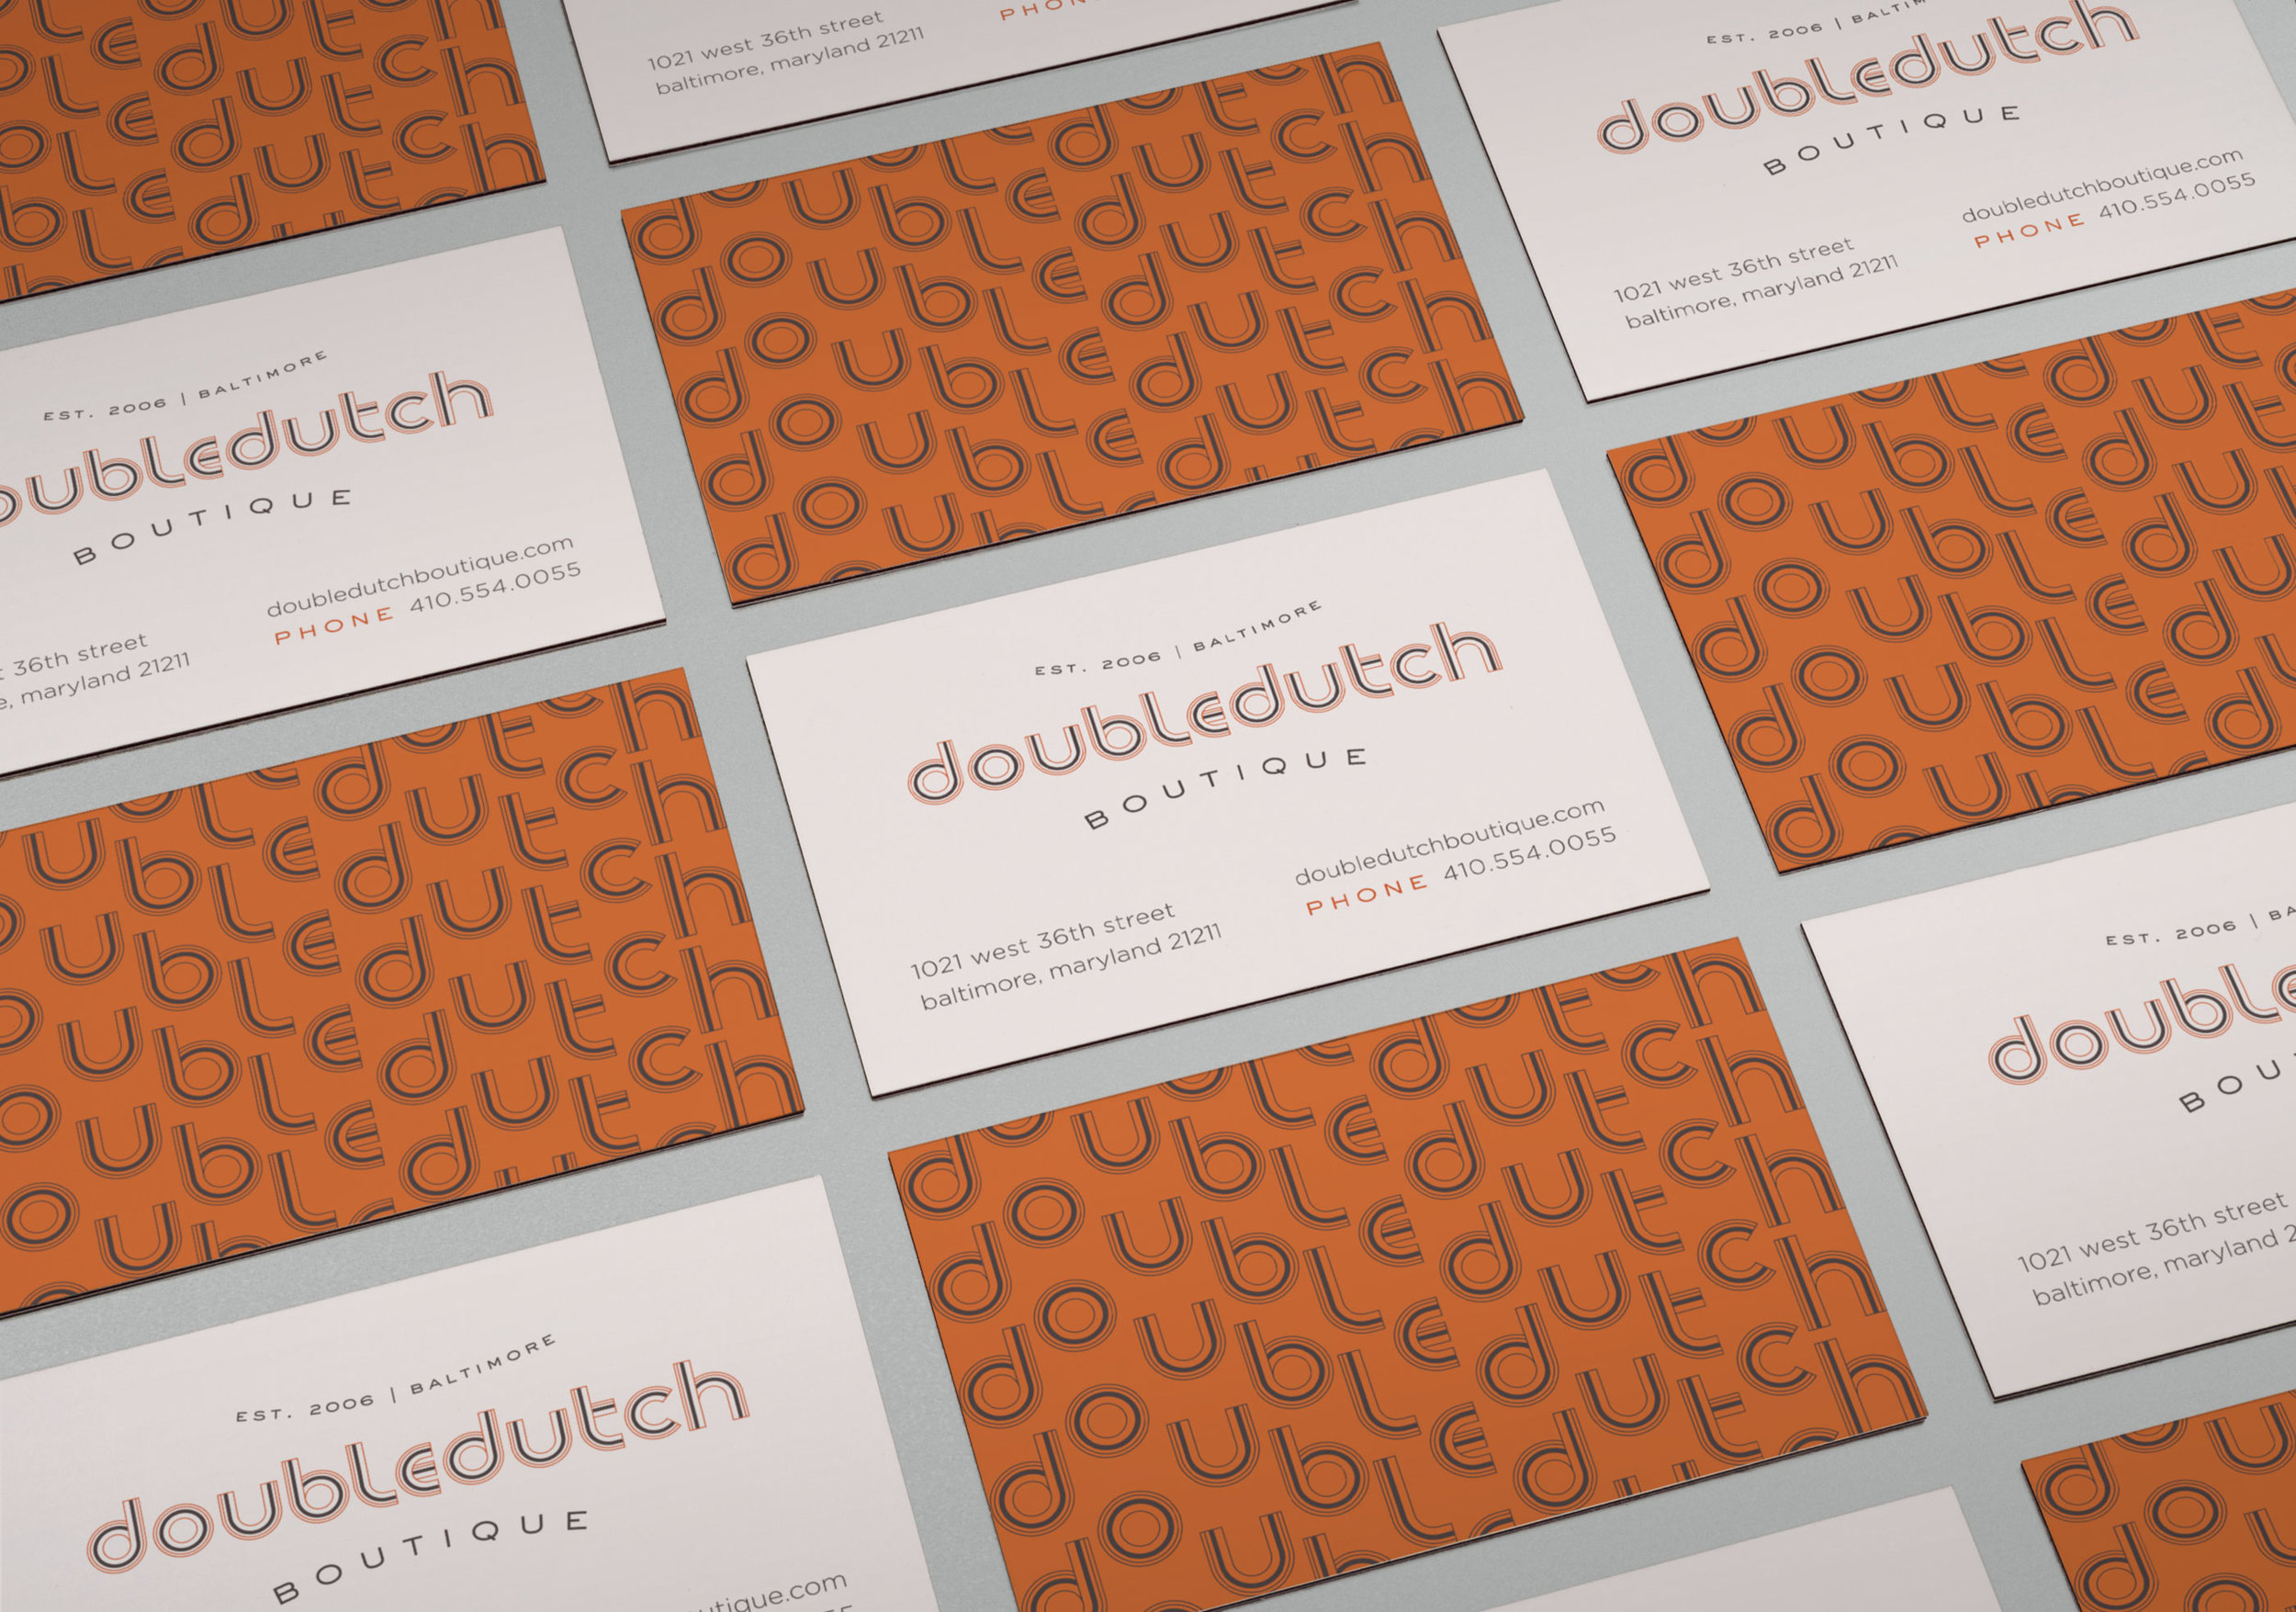 Doubledutch Boutique: Business Card Design